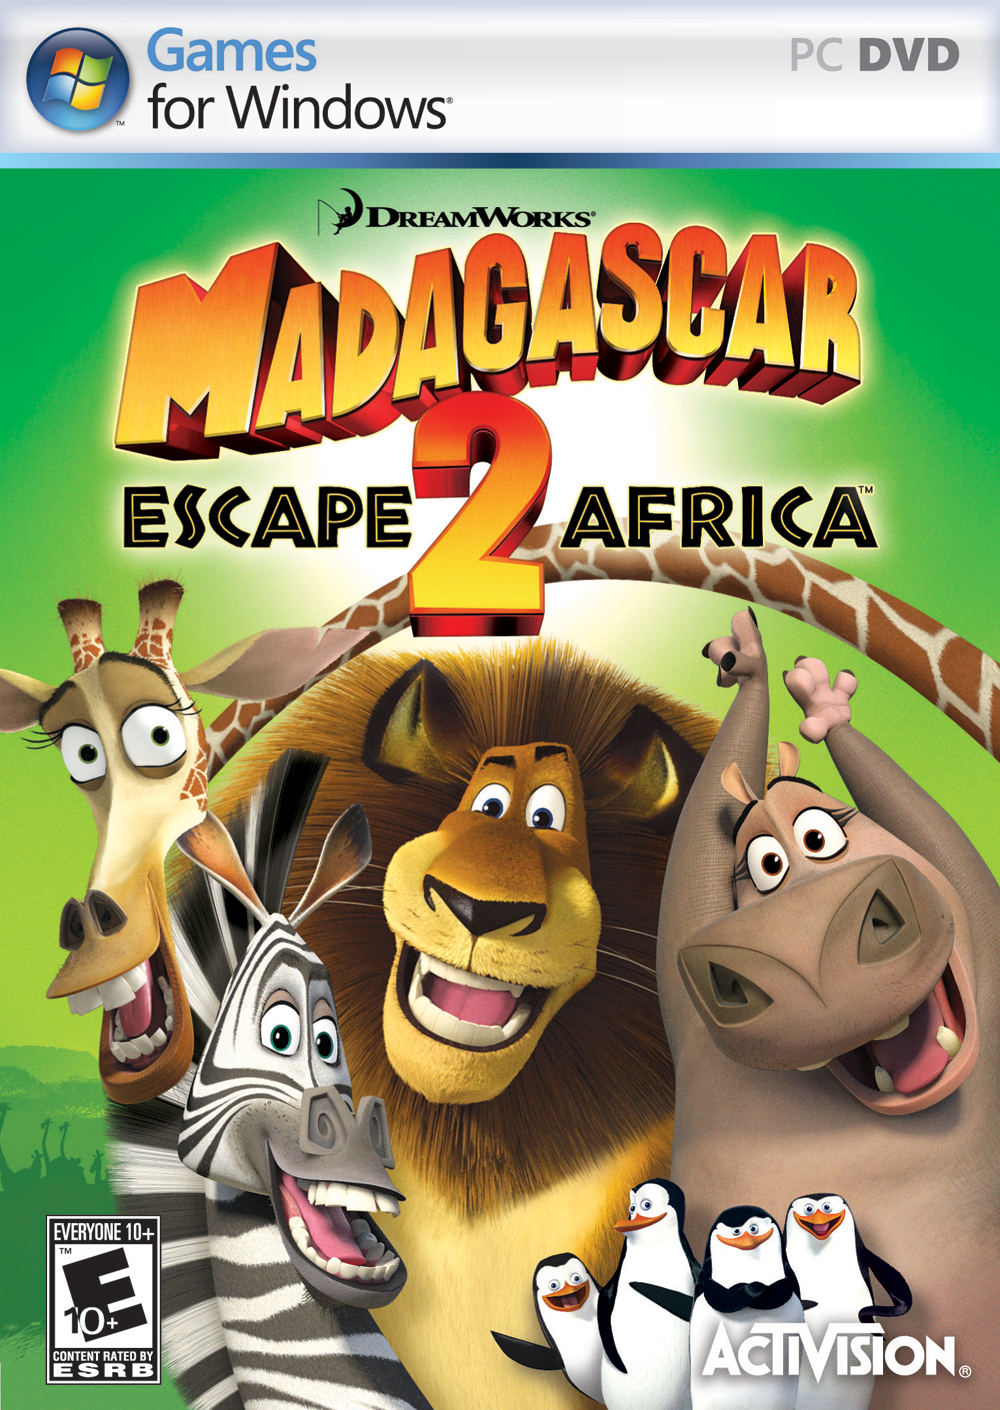 MADAGASCAR 2 - O JOGO DE PS2, XBOX 360, PS3, Wii E PC (PT-BR